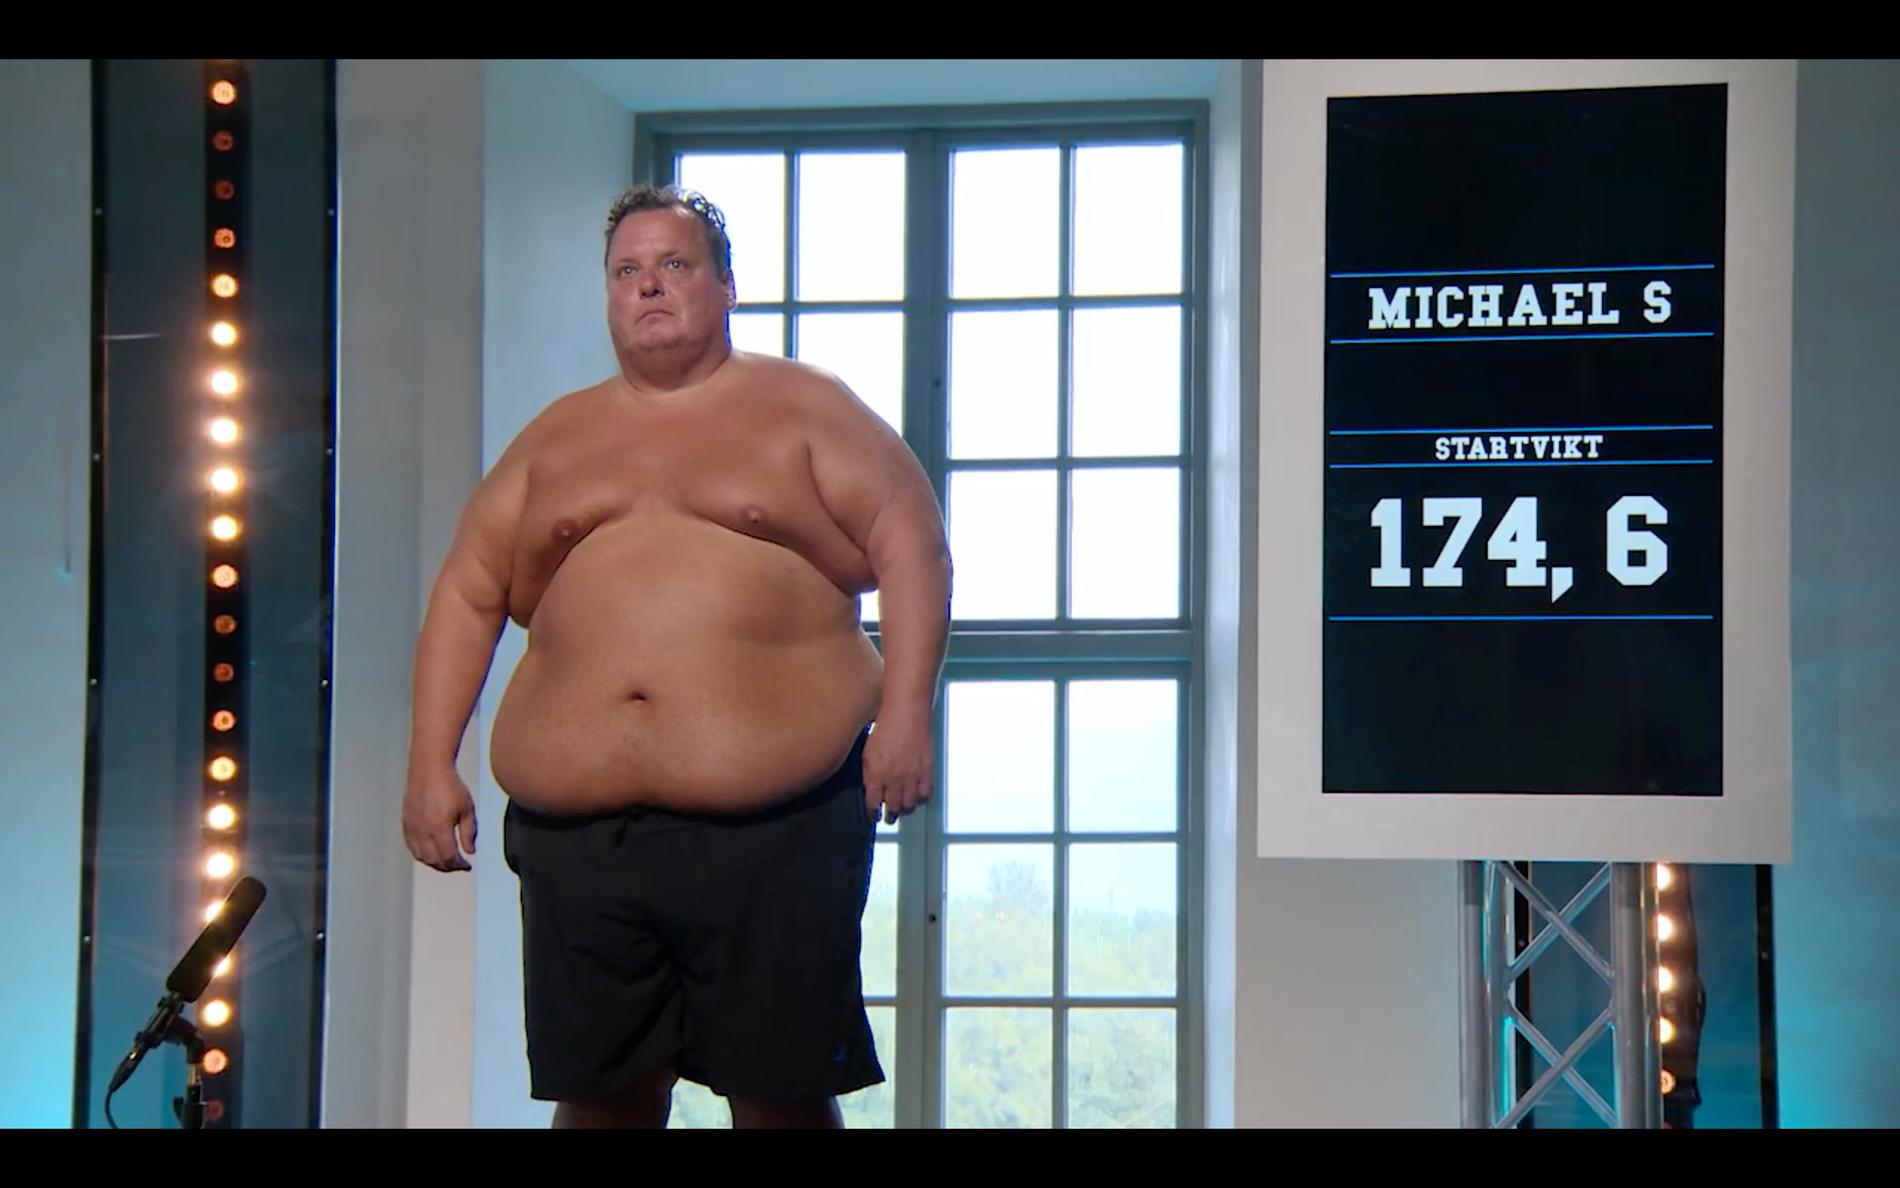 Michael Sjögren är tillbaka i ”Biggest loser” - 20 kilo tyngre än när han vägdes in första gången